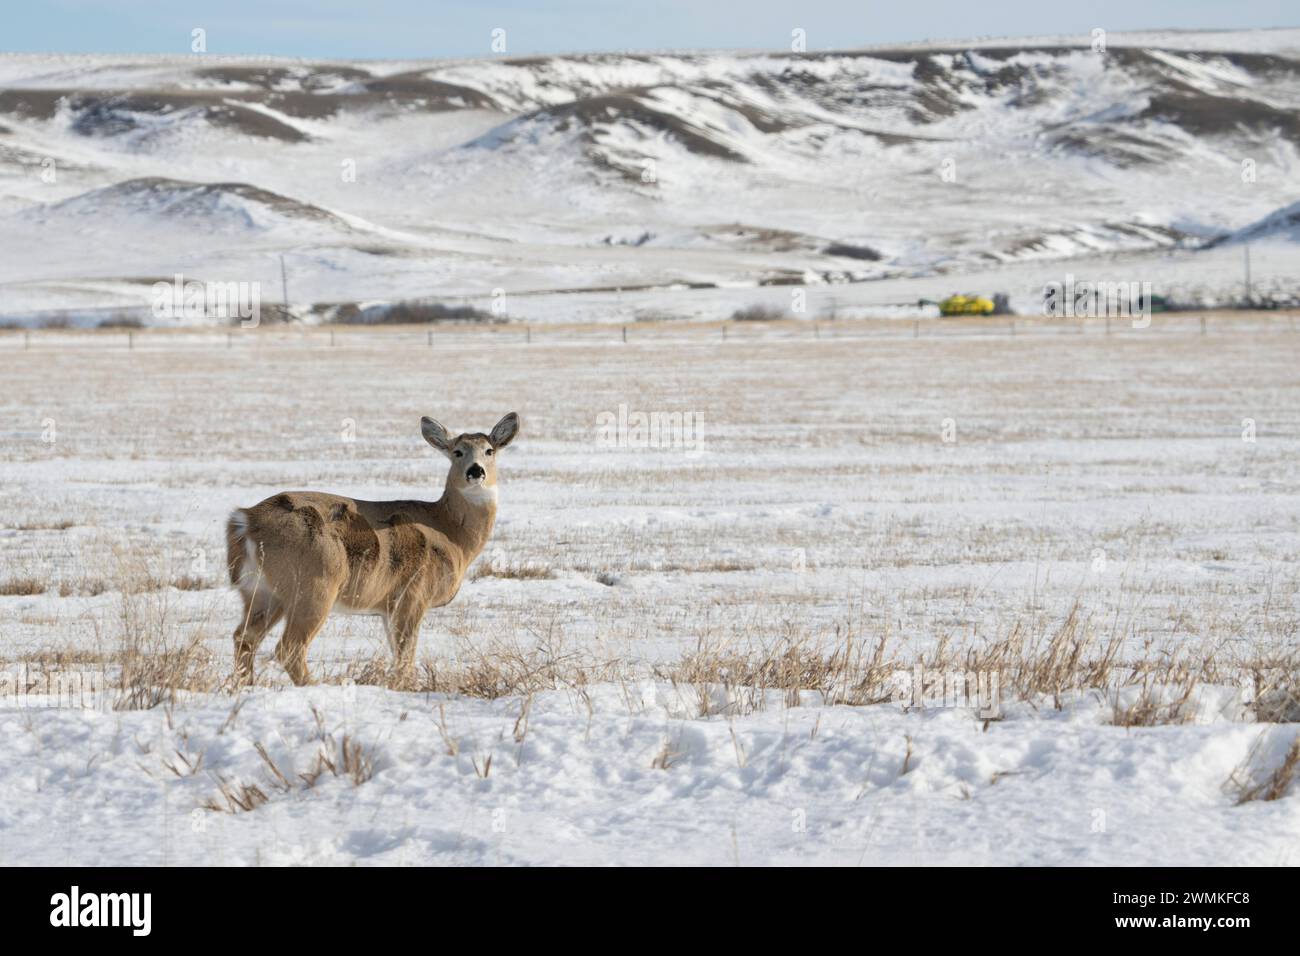 Cerf mulet (Odocoileus hemionus) regardant le photographe dans un paysage hivernal ; Val Marie, Saskatchewan, Canada Banque D'Images